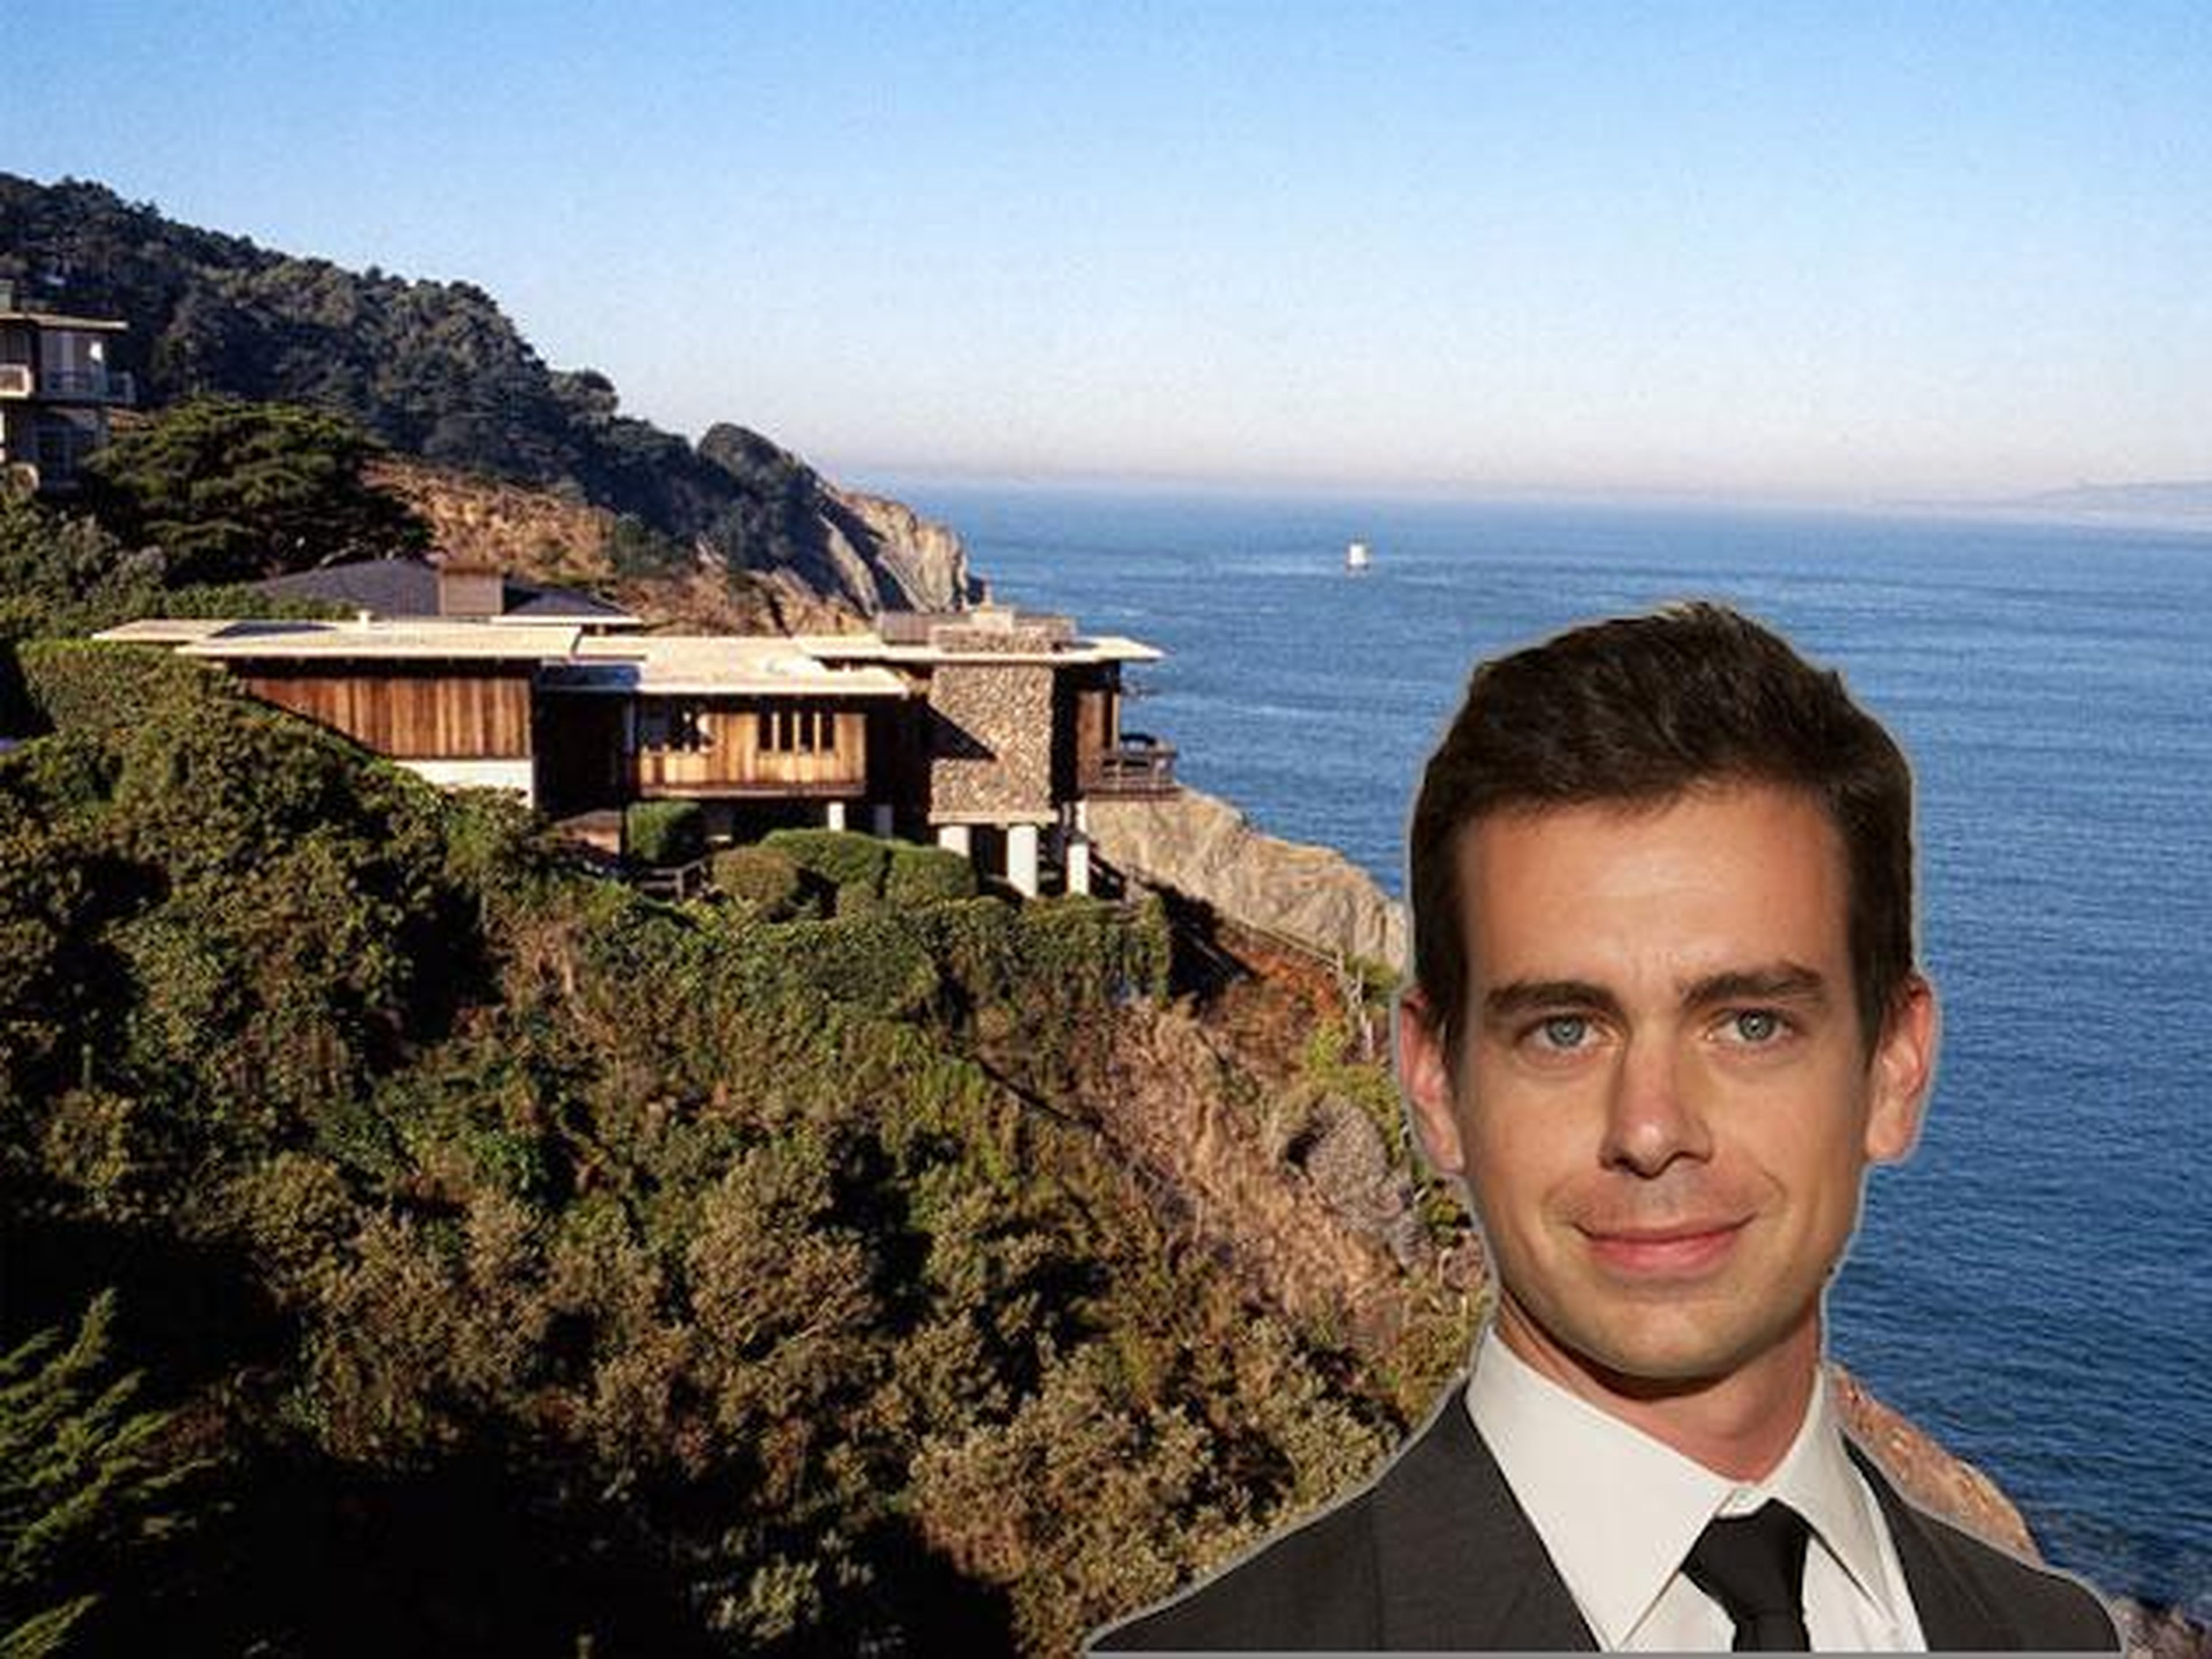 [RE] El CEO de Twitter y Square, Jack Dorsey, compró su casa en San Francisco por 9,9 millones de dólares en 2012.